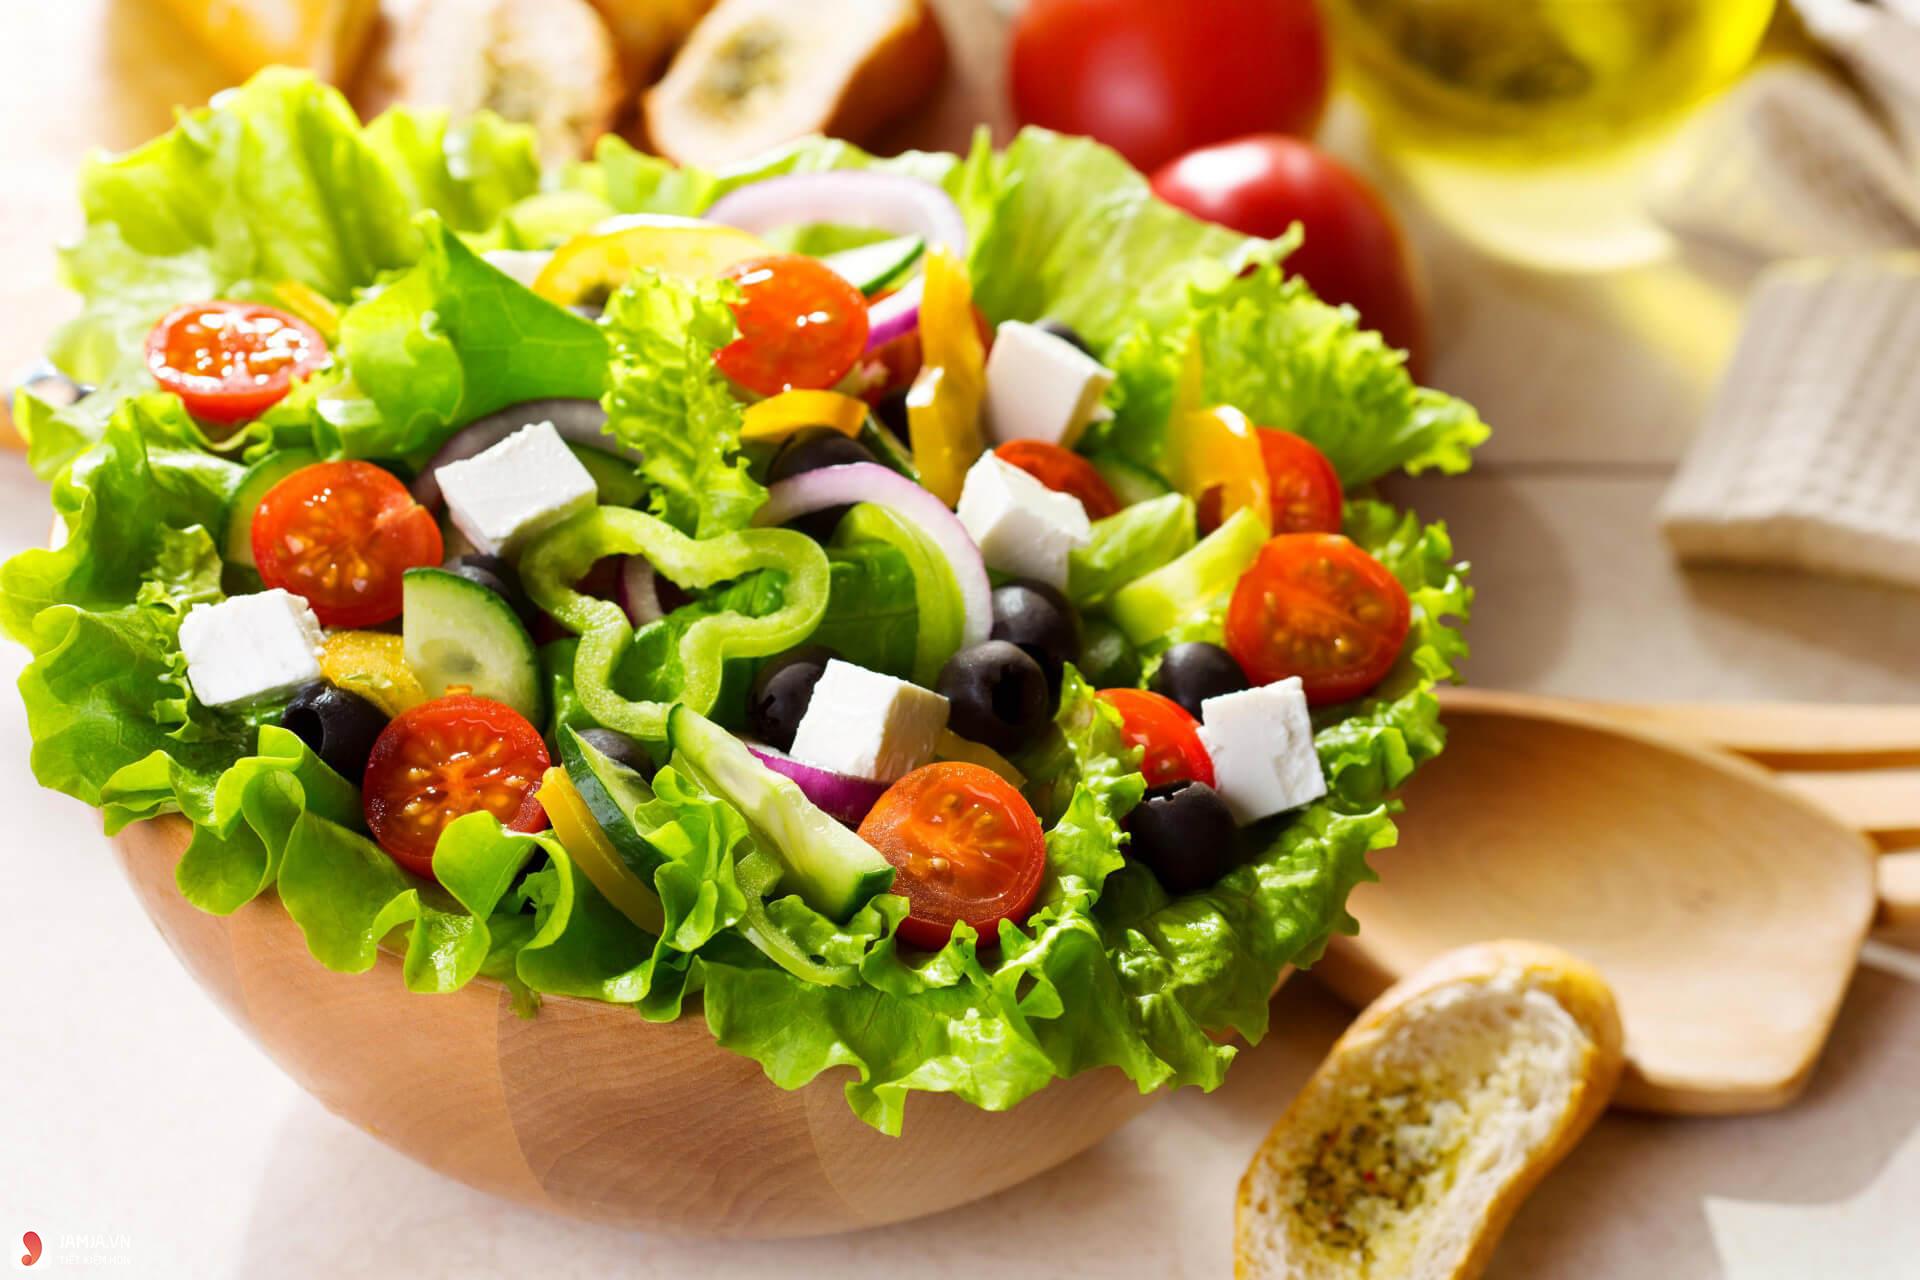 Salad rau củ quả kết hợp giấm thơm ngon, đặc sắc